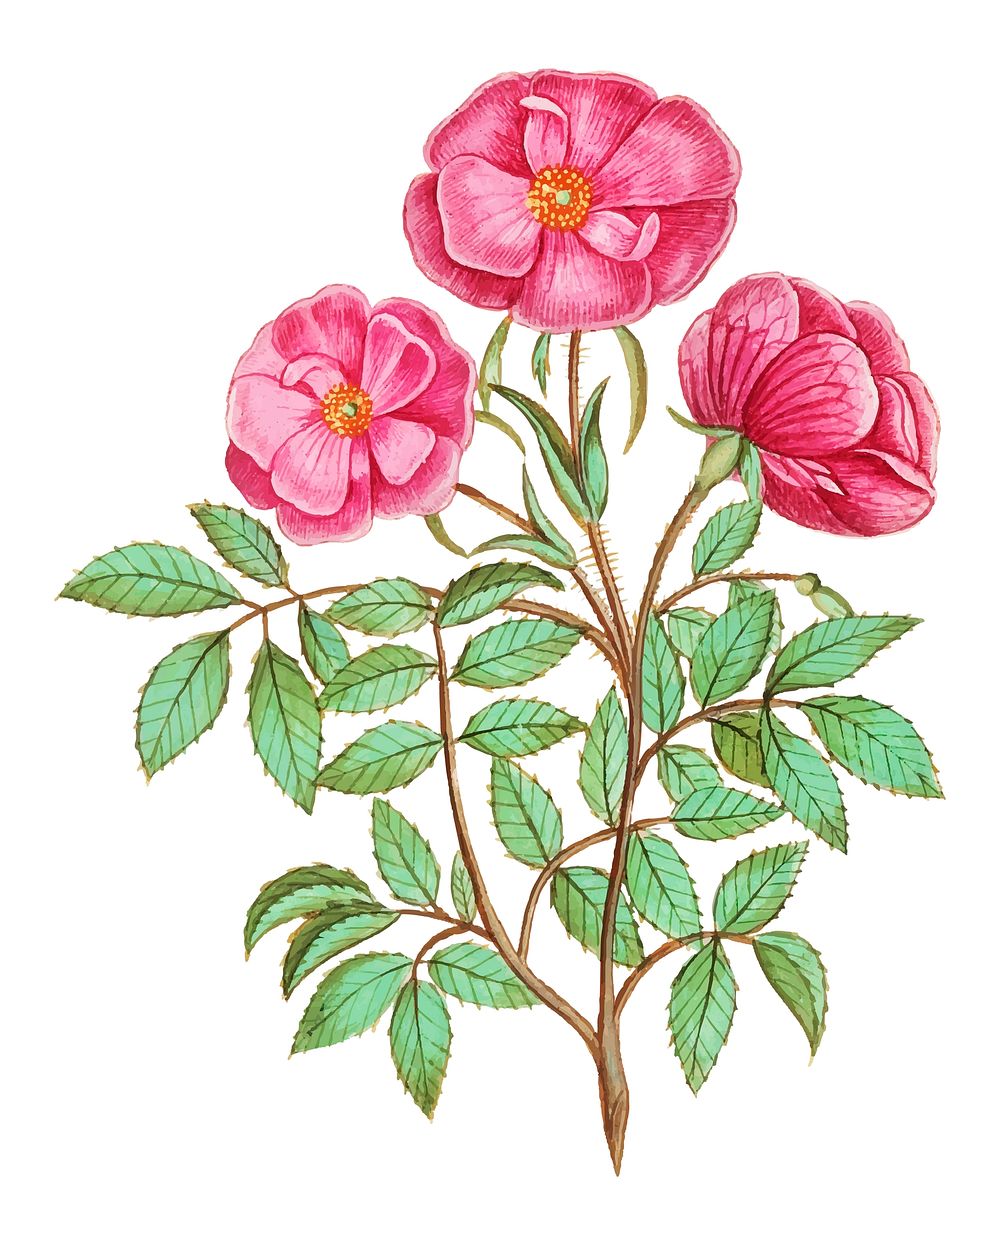 Vintage wild rose flower illustration in vector